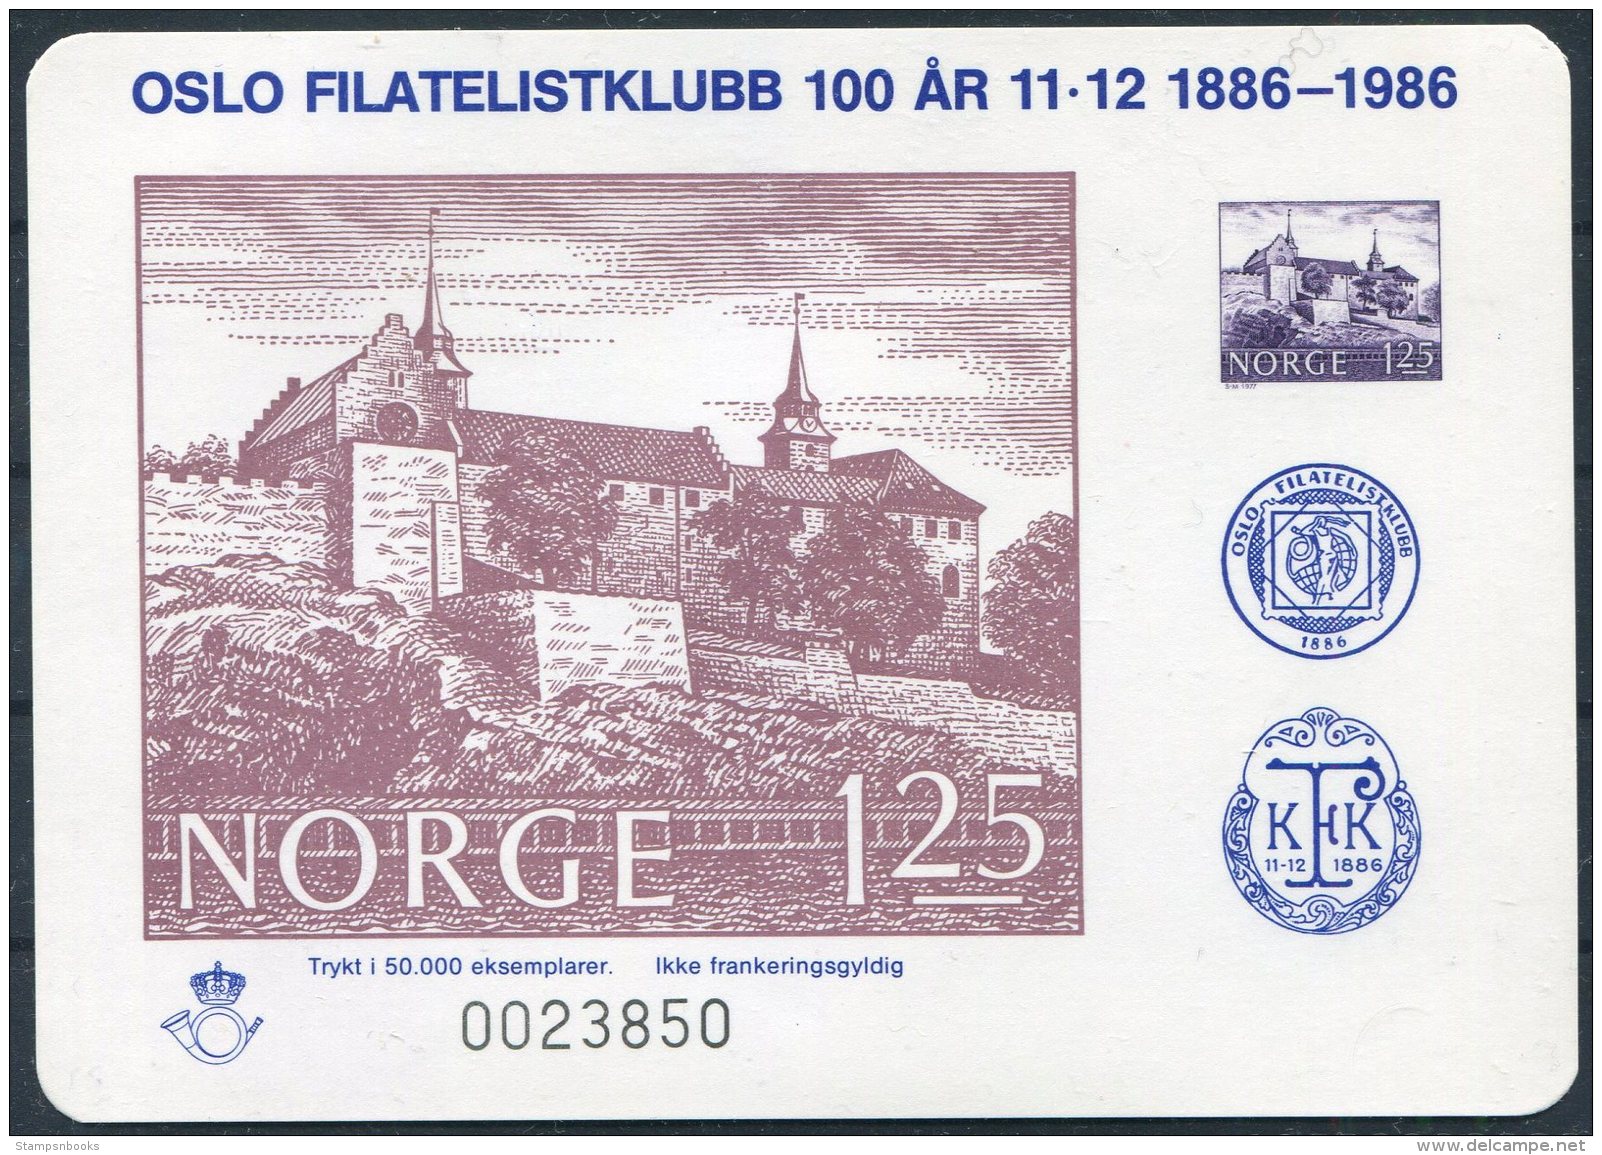 1986 Norway Stamp Exhibition Souvenir Sheet Oslo Centenary - Ensayos & Reimpresiones